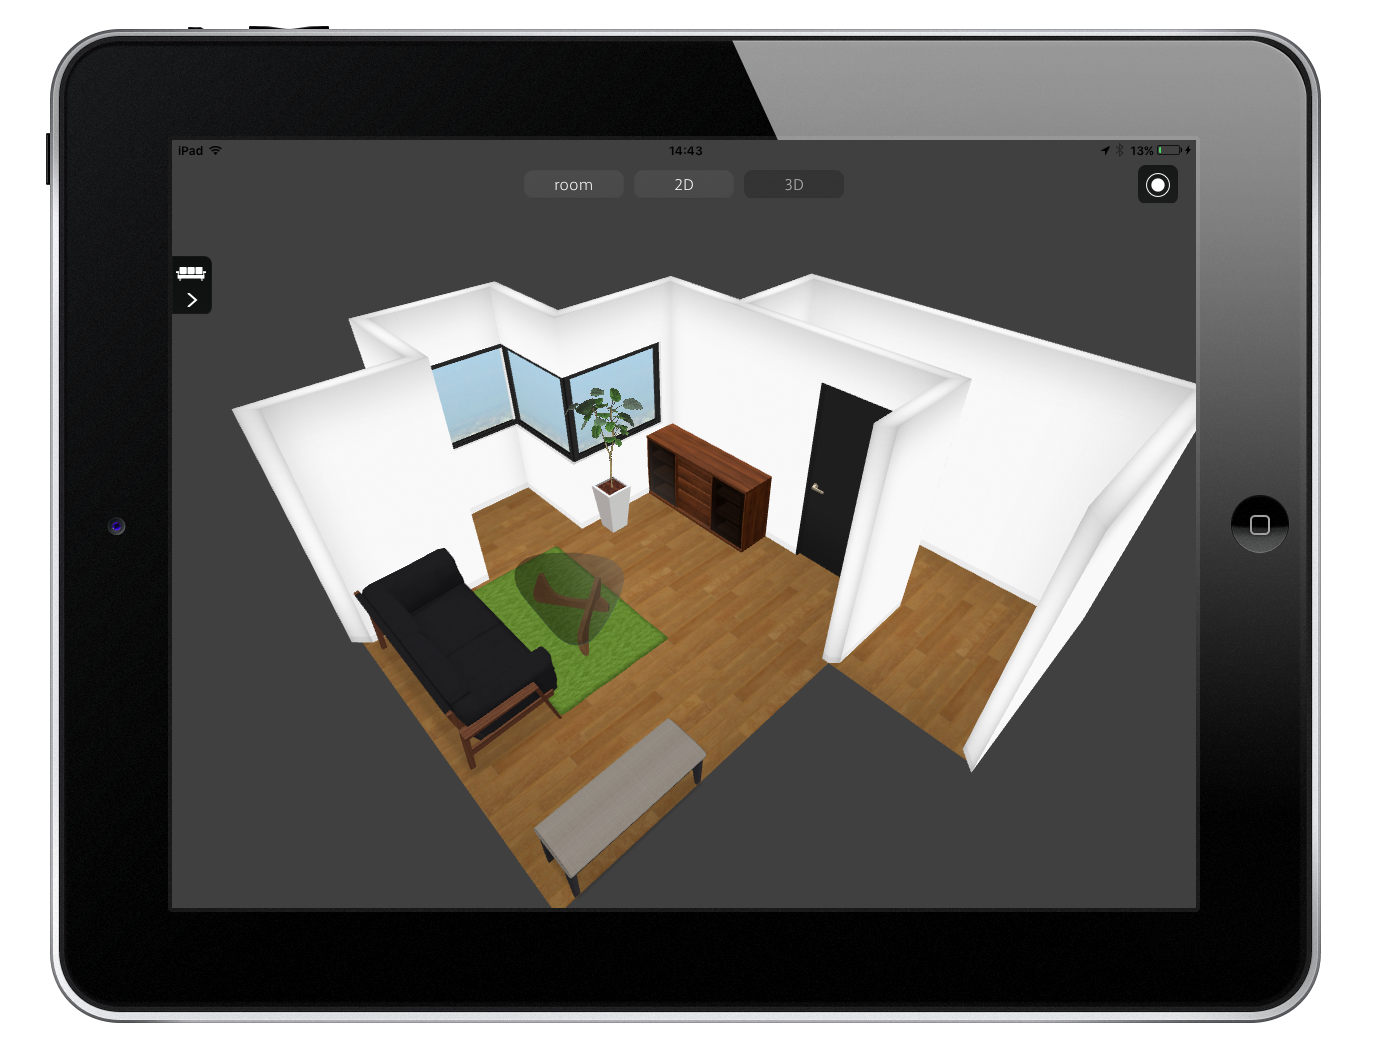 株式会社島忠がリビングスタイルのipad版インテリア3dシミュレーションアプリを採用